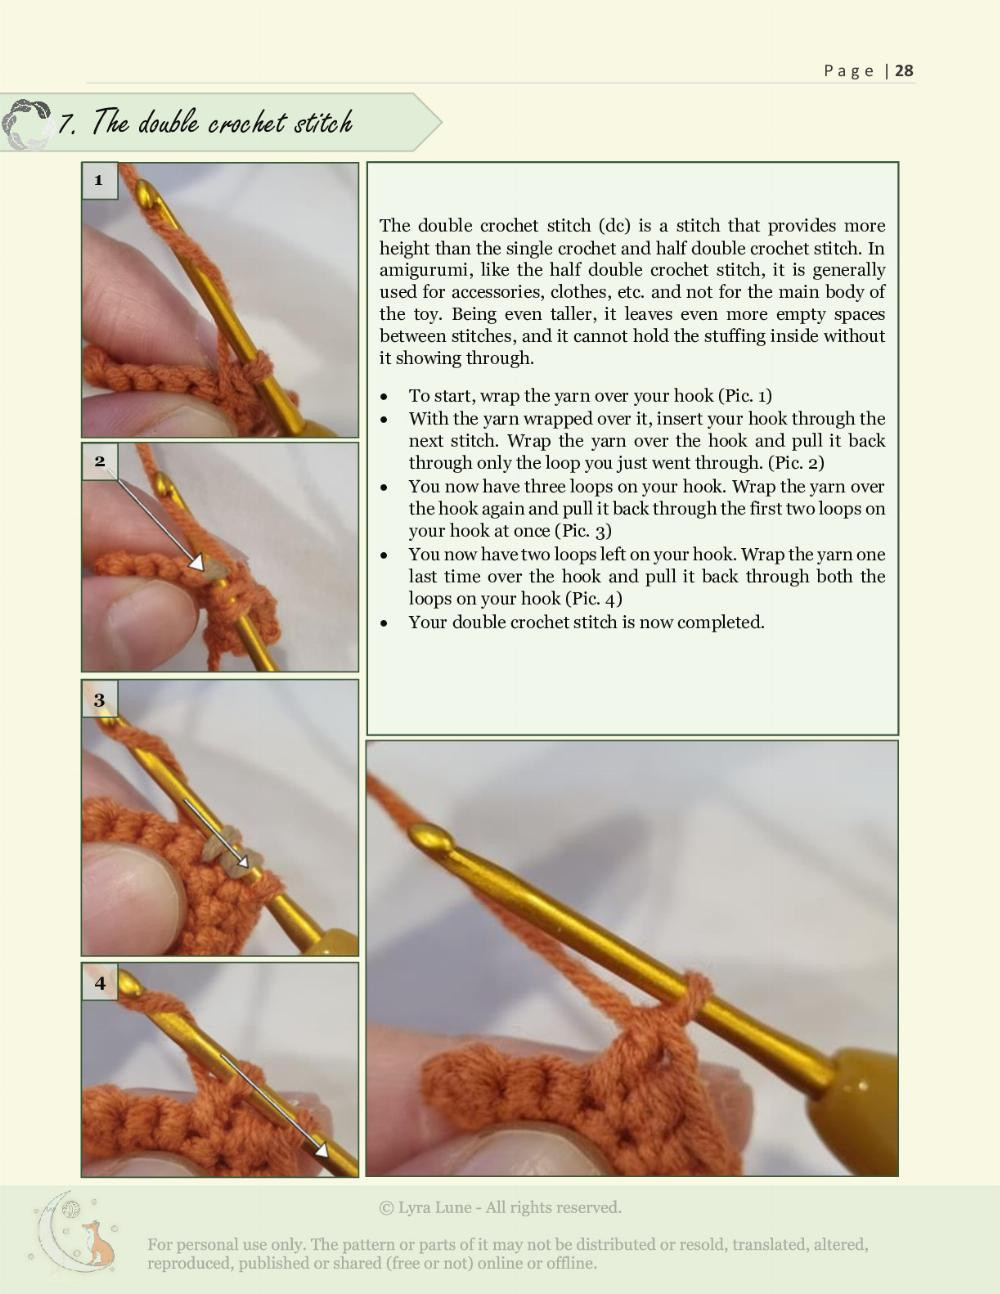 anise crochet pattern